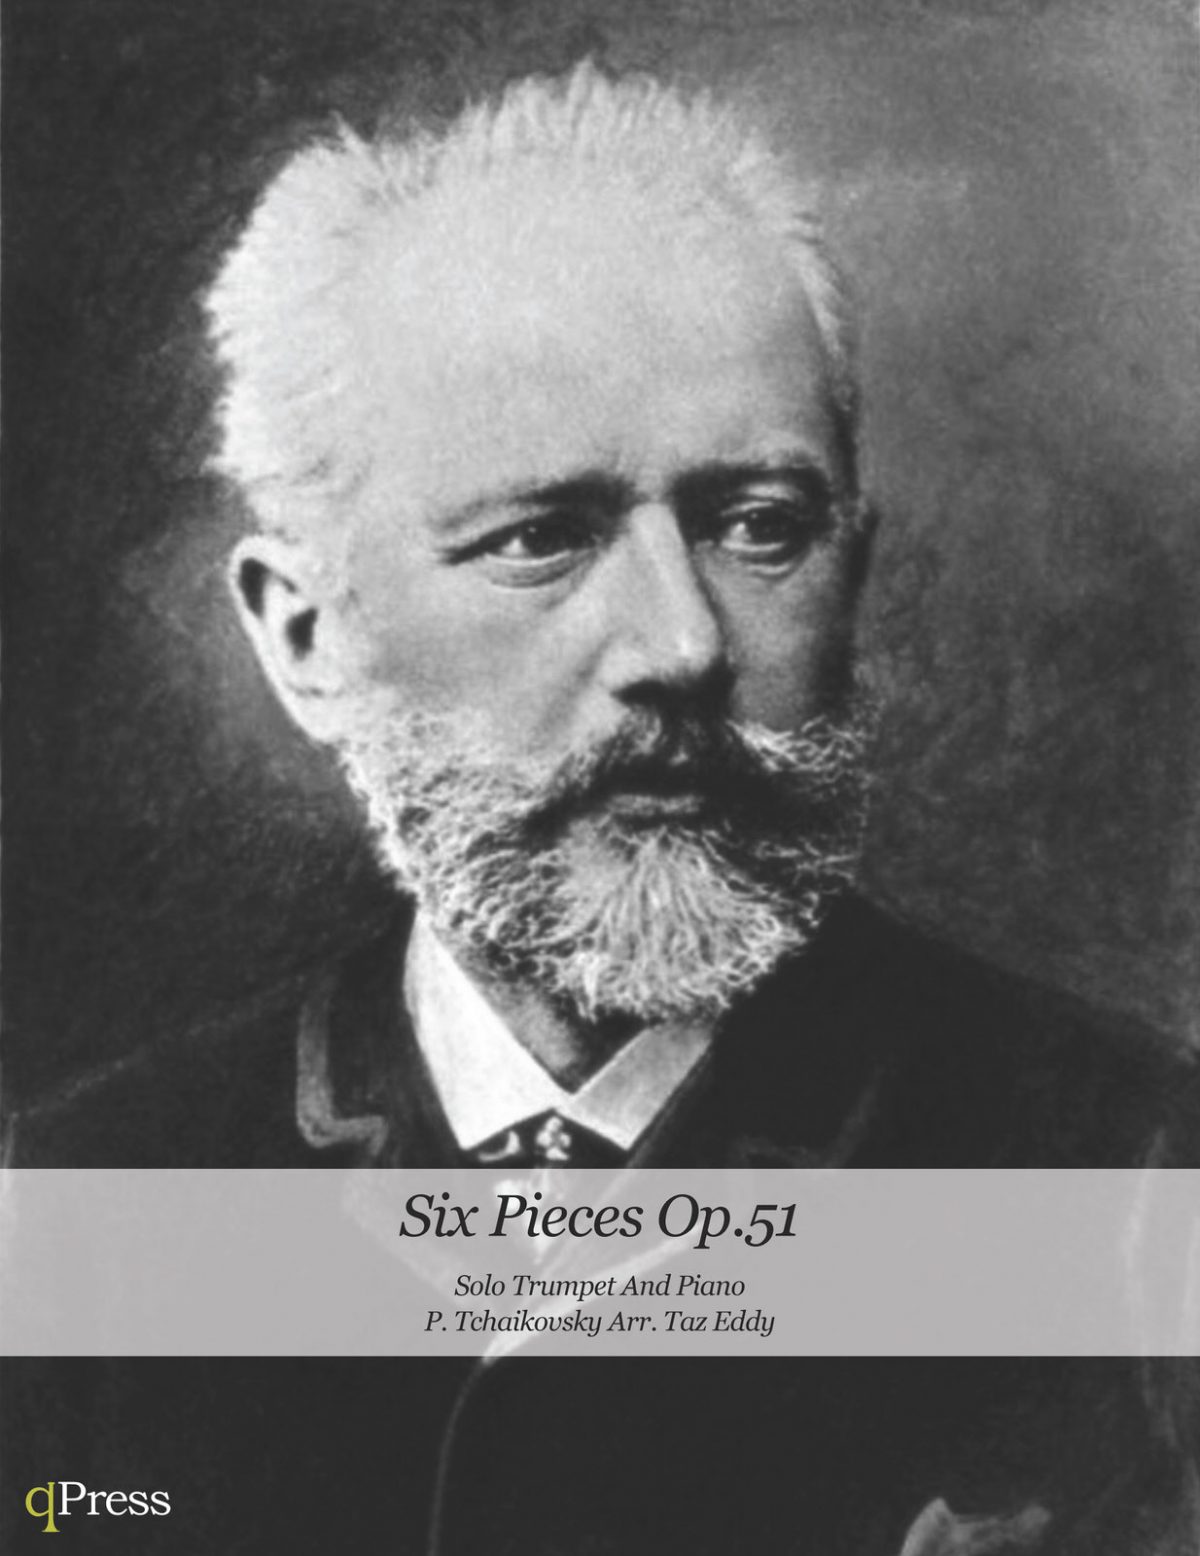 Tchaikovsky's Six Pieces Op.51